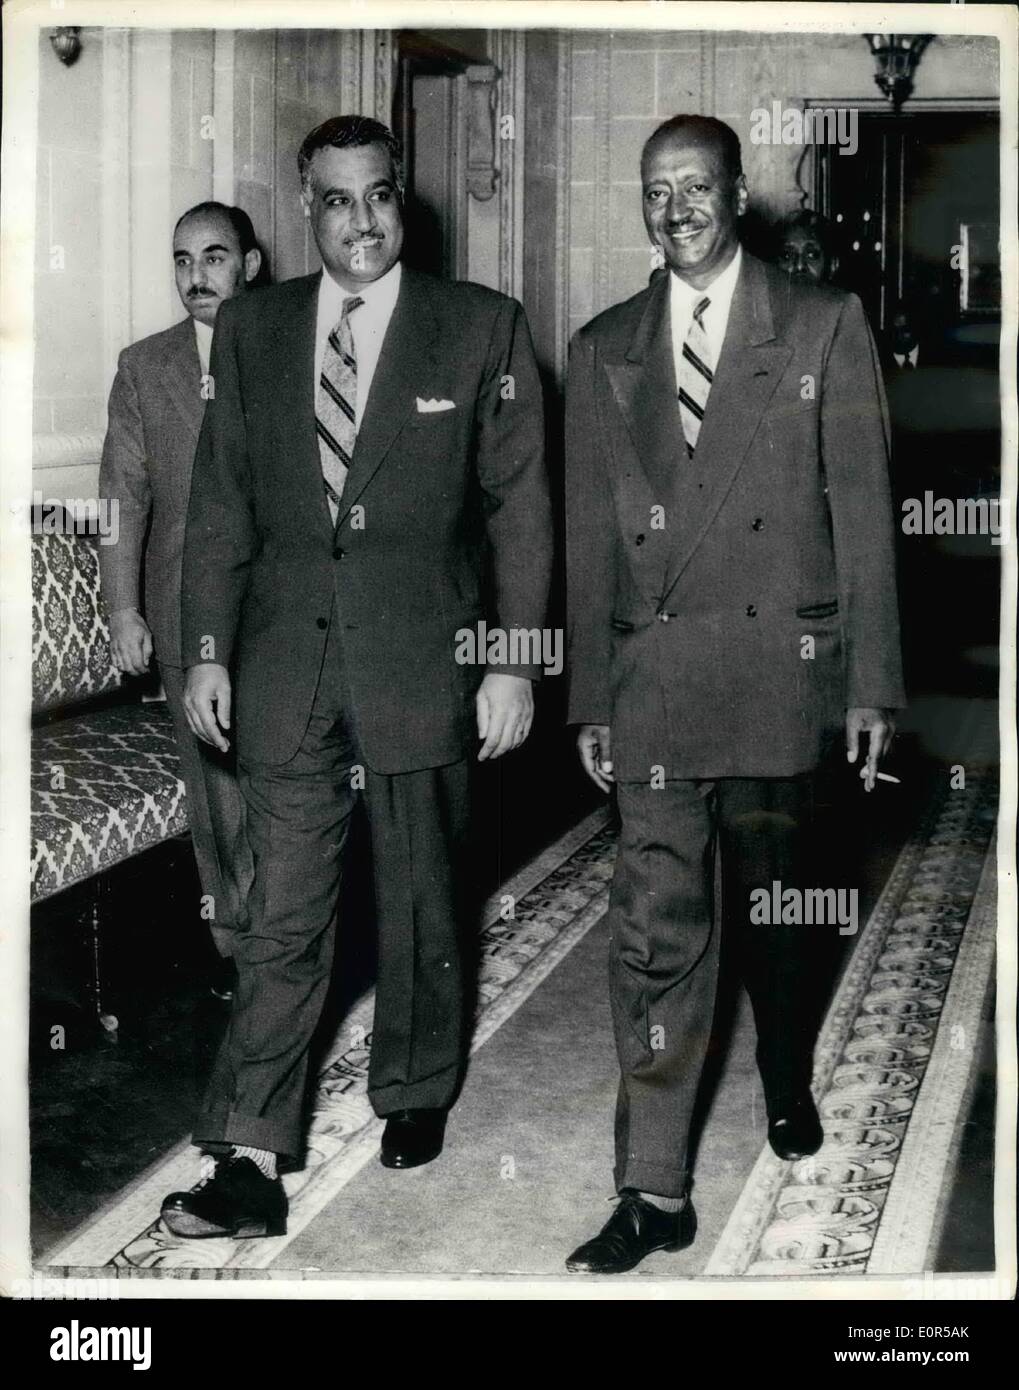 10 févr. 19, 1958 - 19-2-58 Le ministre des Affaires étrangères du Soudan rencontre le président Nasser. Réunion du Caire sur le différend frontalier. Avant de quitter Le Caire aujourd'hui pour revenir à Khartoum Mohamed Ahmed Mahgoub le Ministre soudanais des affaires étrangères a eu une réunion avec le président Nasser. Il a été rappelé par son gouvernement pour recevoir un compte rendu détaillé de son différend frontalier avec l'Egypte. Le Gouvernement soudanais a rejeté hier soir l'Égypte de protestation contre la présence de troupes soudanaises dans la zone contestée. Photo : Keystone montre le président Nasser avec Mohamed Ahmed Mahgoub, après leur réunion au Caire aujourd'hui. Banque D'Images